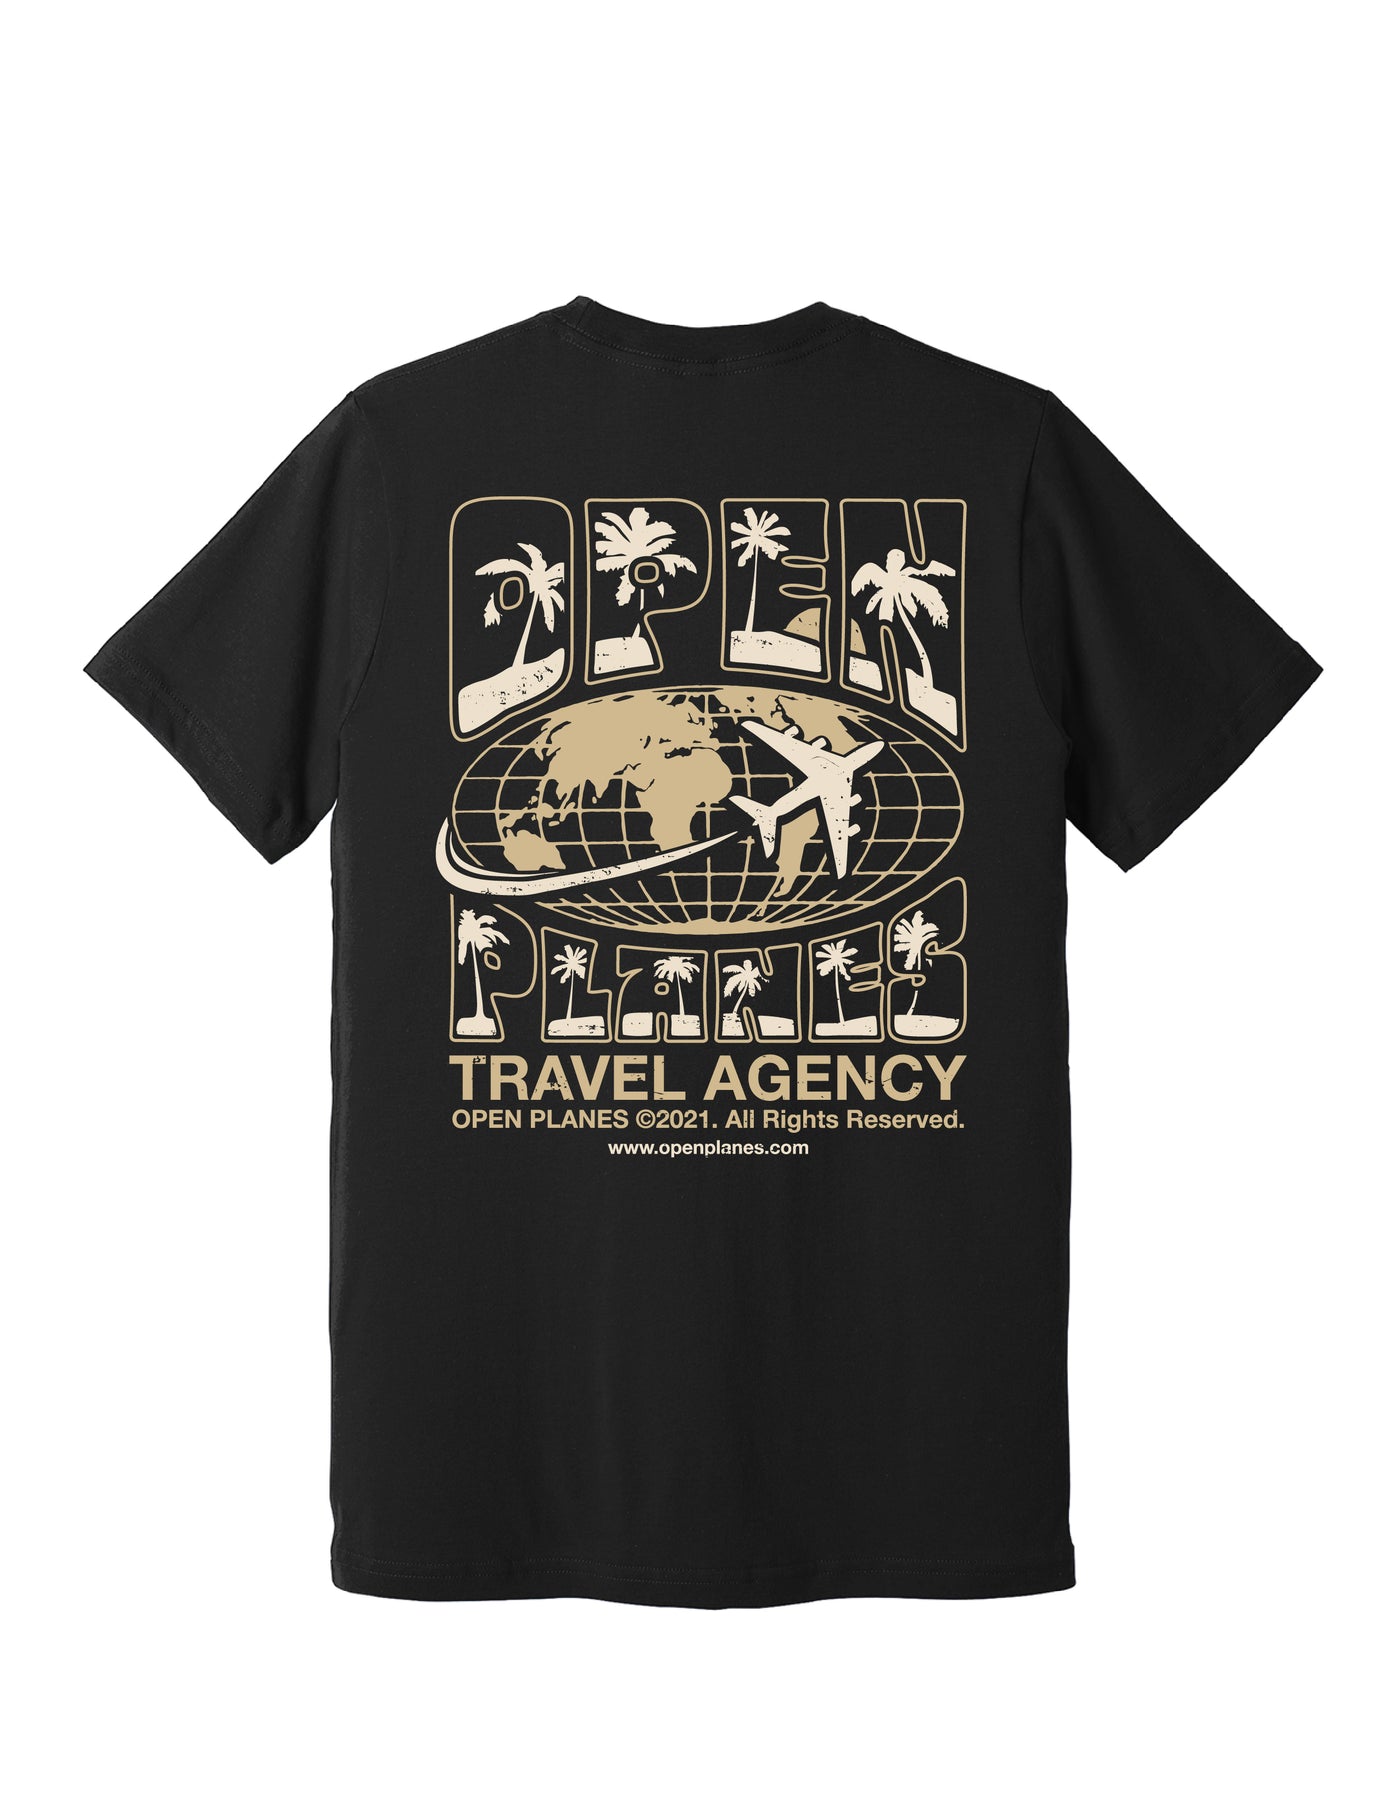 Travel Agency Tee - Black